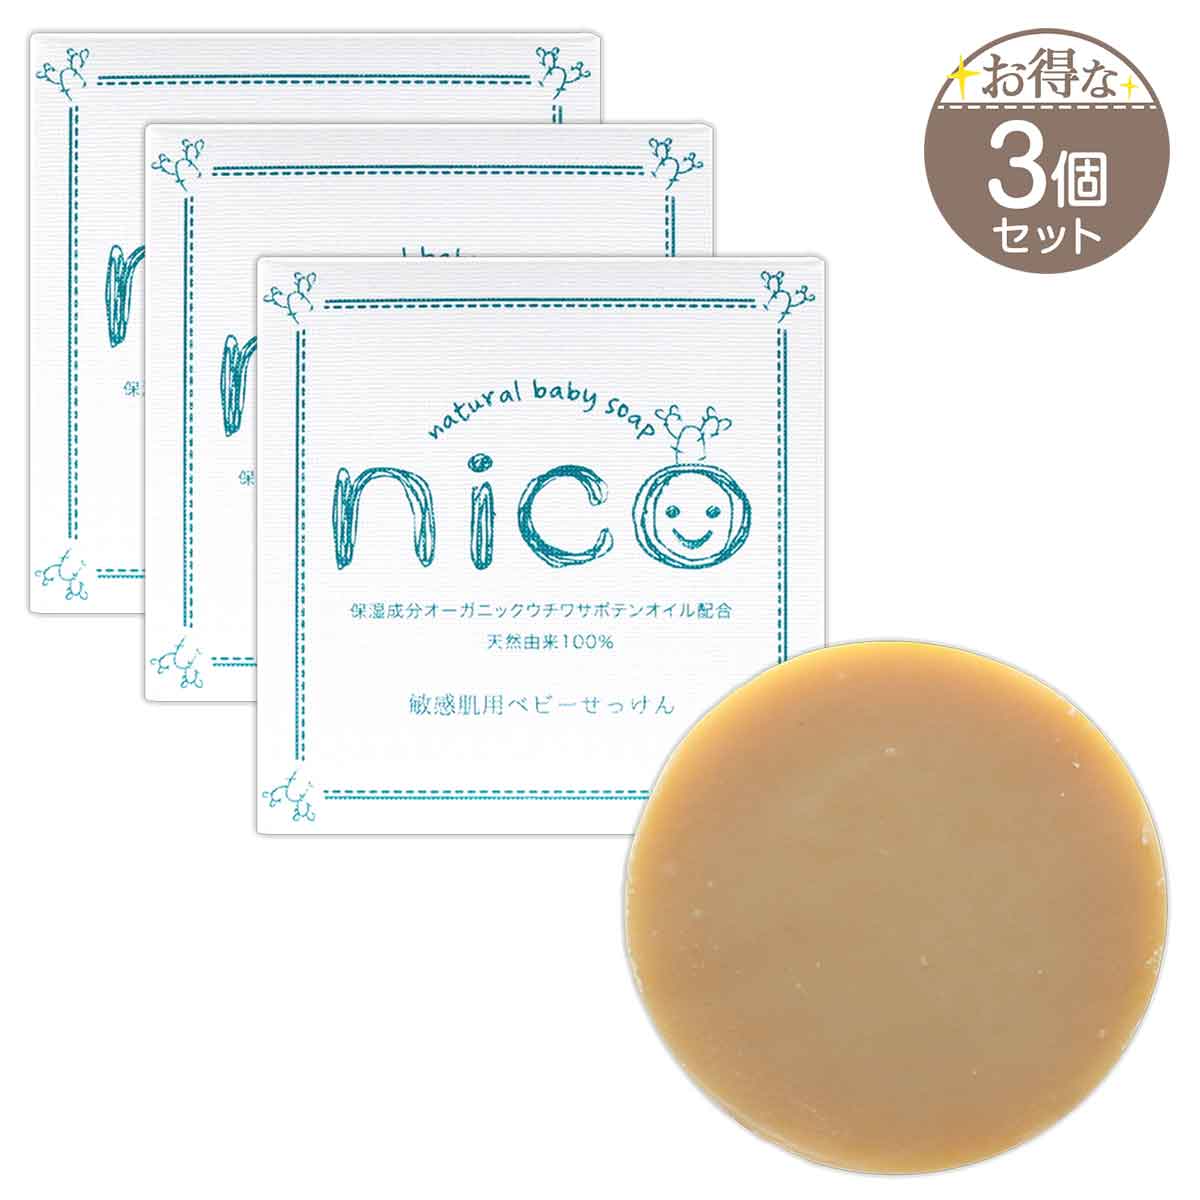 【楽天市場】【 2個セット 】 nico石鹸 ニコ石鹸 にこせっけん 敏感 